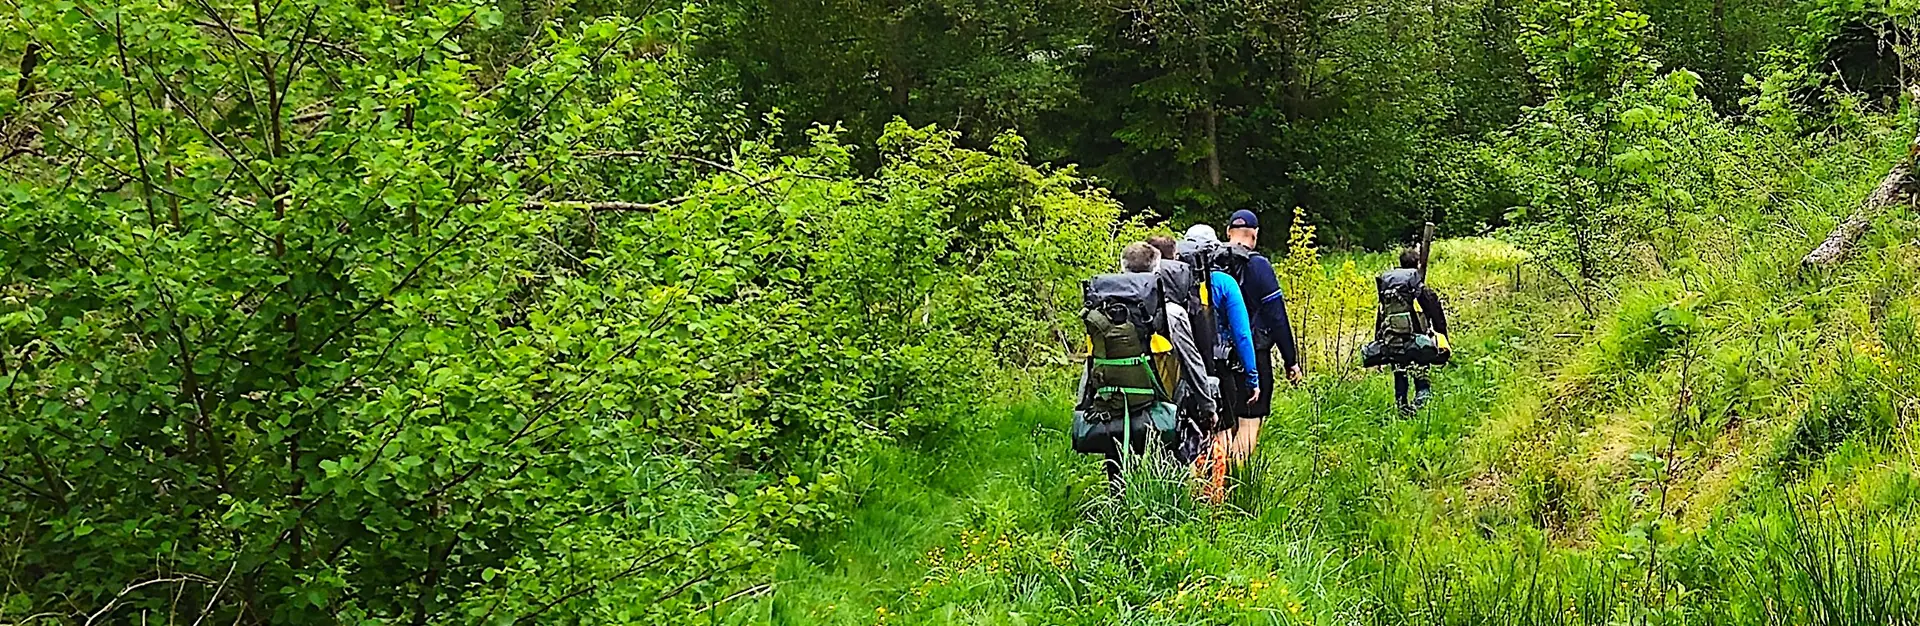 Du suchst nach einem spannenden Ausflugsziel und Outdoor Erlebnis im Harz / möchtest gern Kanu oder Kajak fahren / Dann wäre vielleicht eine Packrafting Tour im Harz das Richtige für Dich...